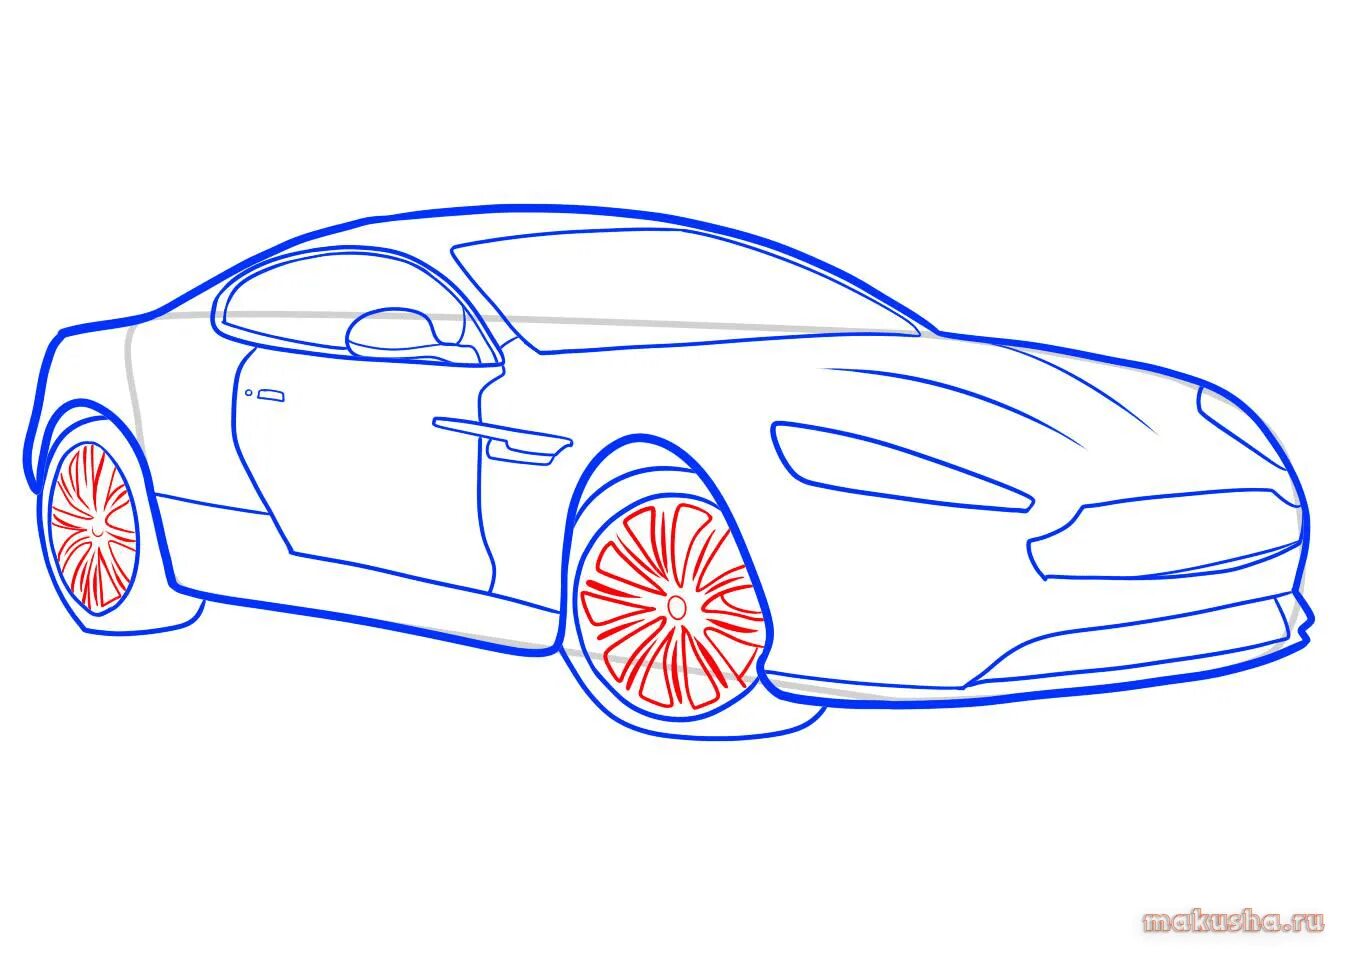 Картинки легкой машины. Автомобиль рисунок. Современный автомобиль рисунок. Рисунок автомобиля карандашом. Машины для срисовывания.